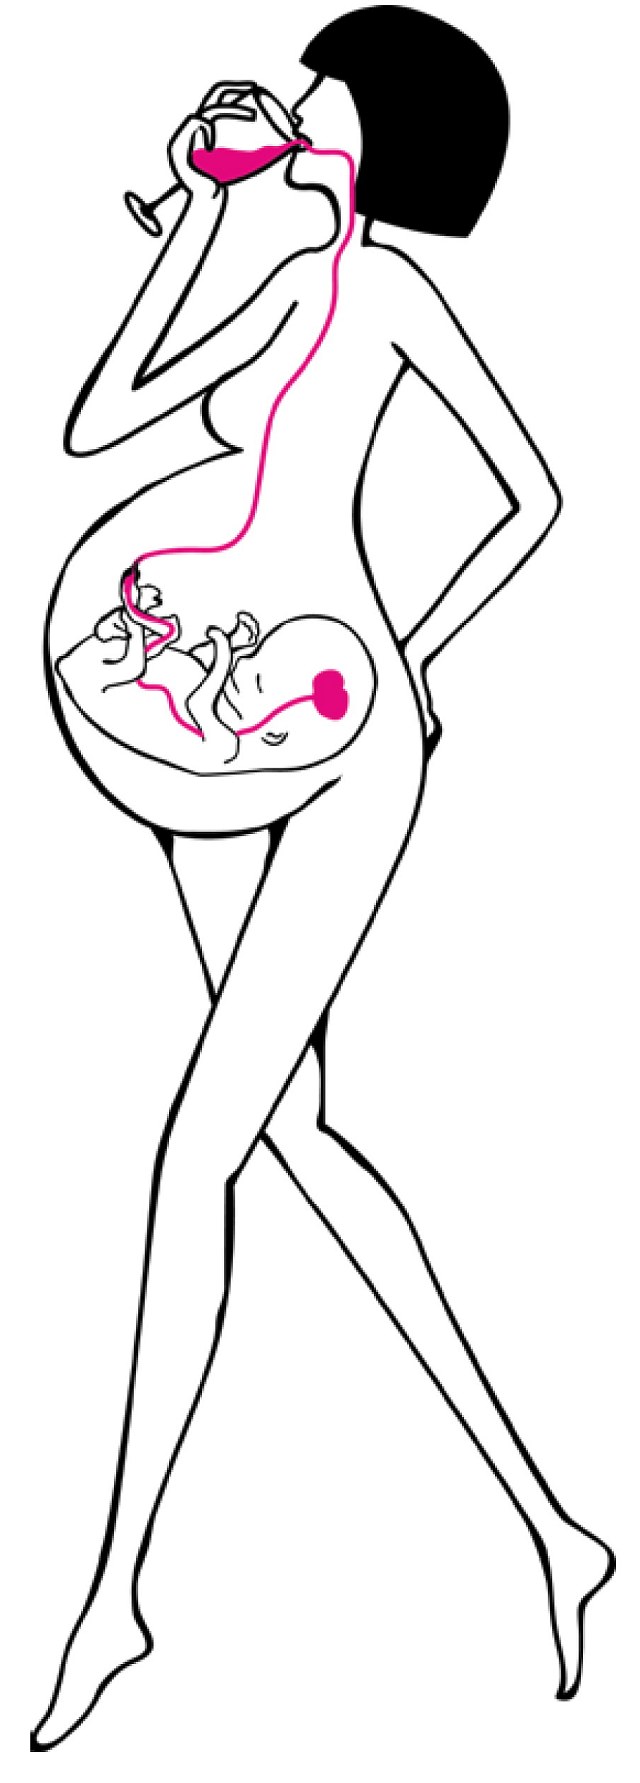 Piktogramm einer schwangeren Frau, die Alkohol trinkt